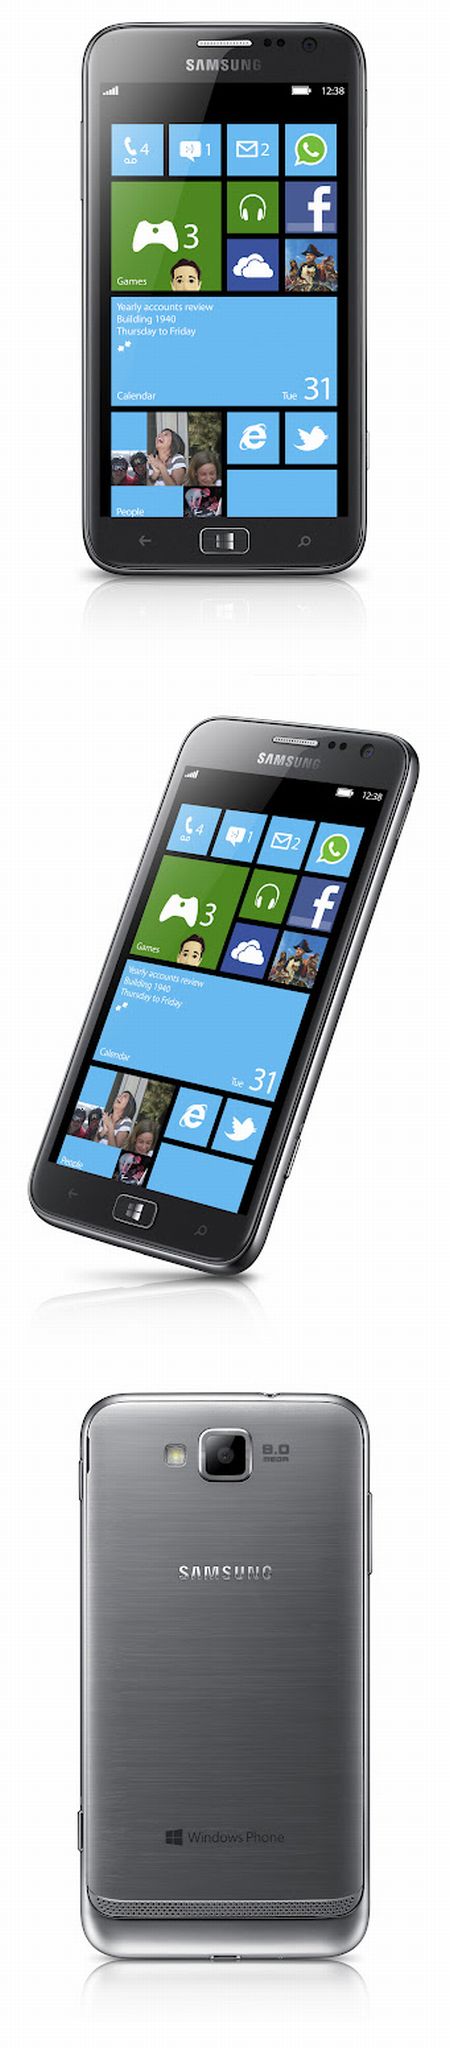 IFA2012 - Samsung ATIV S: Az első hivatalos Windows Phone 8 mobil!